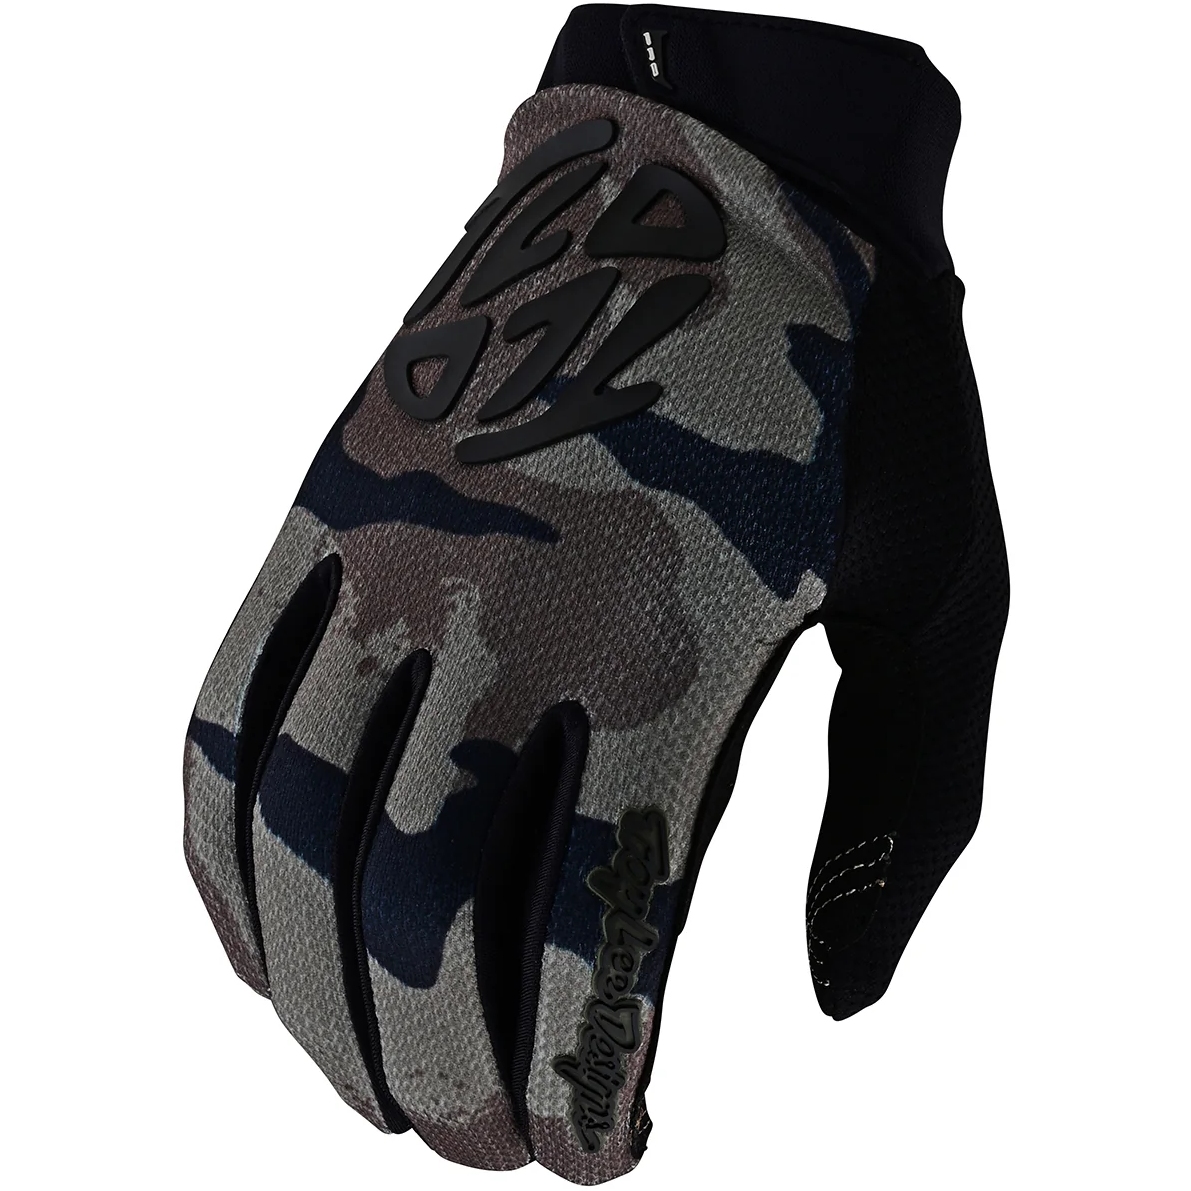 Produktbild von Troy Lee Designs GP Pro Handschuhe Herren - Boxed In Olive